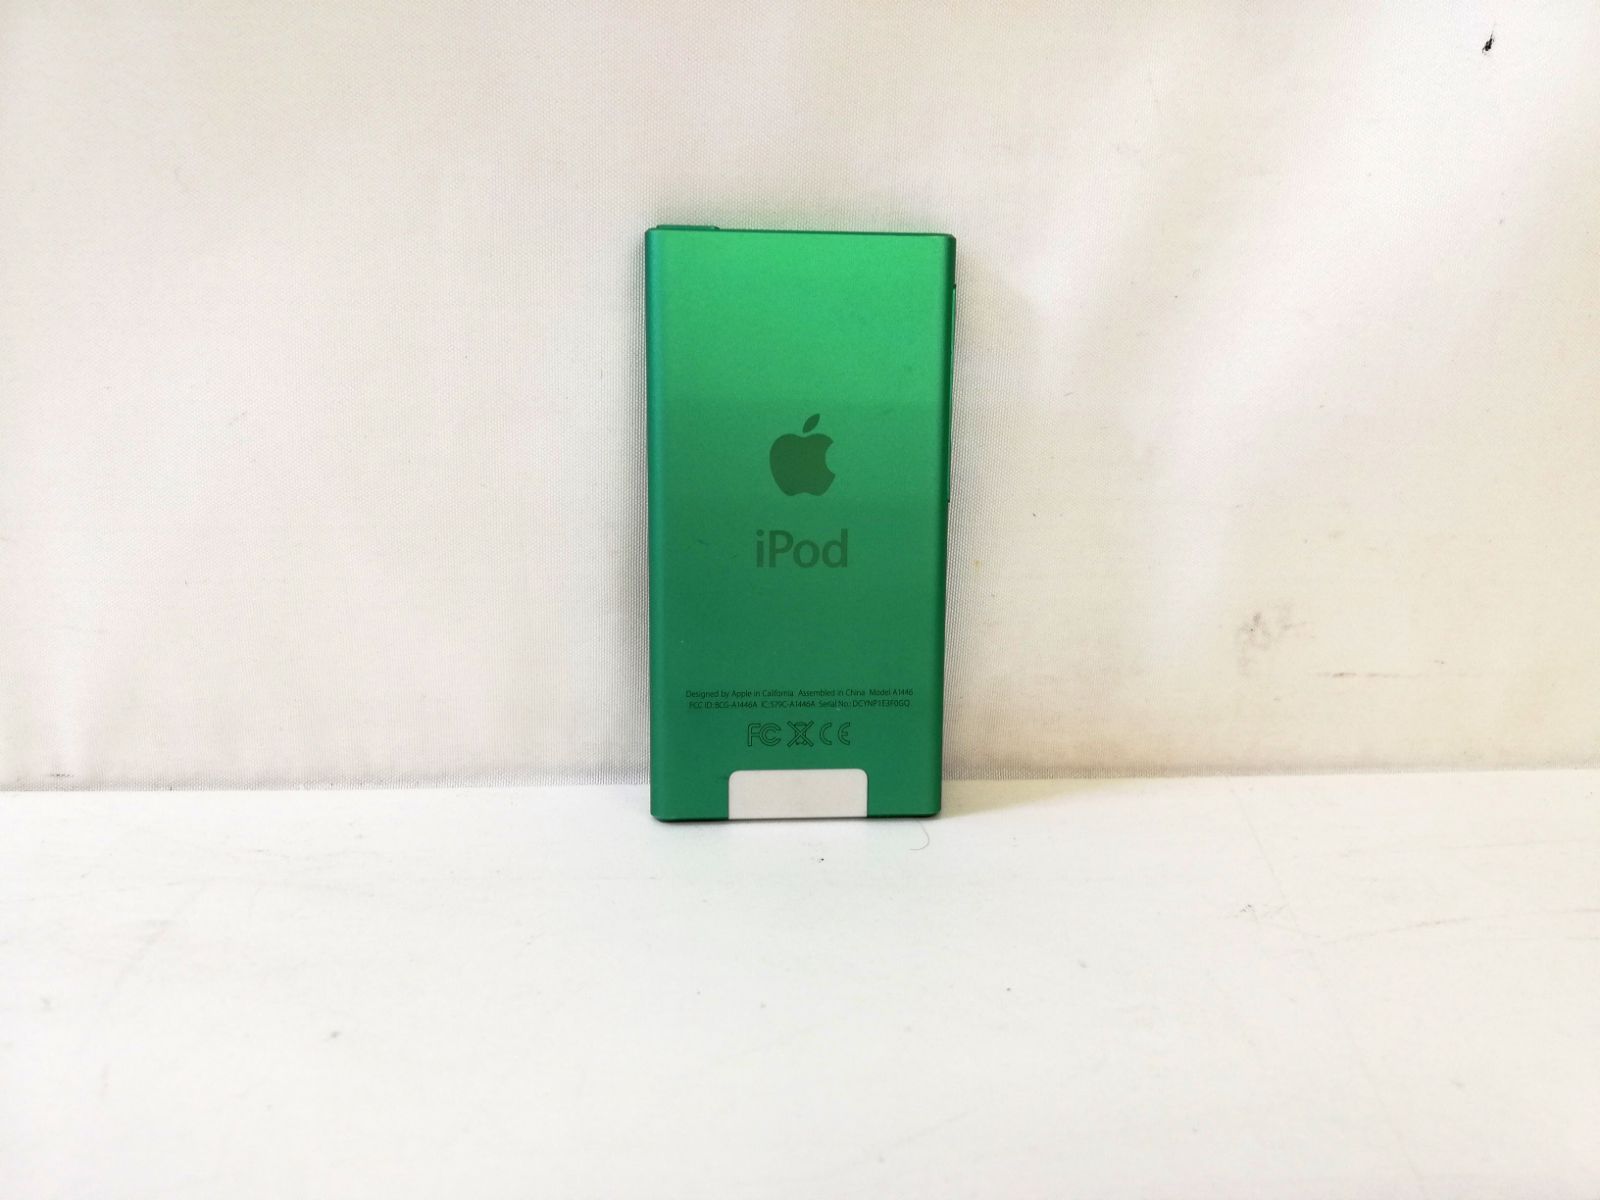 アップル 第7世代 iPod nano 16GB MD478J www.krzysztofbialy.com